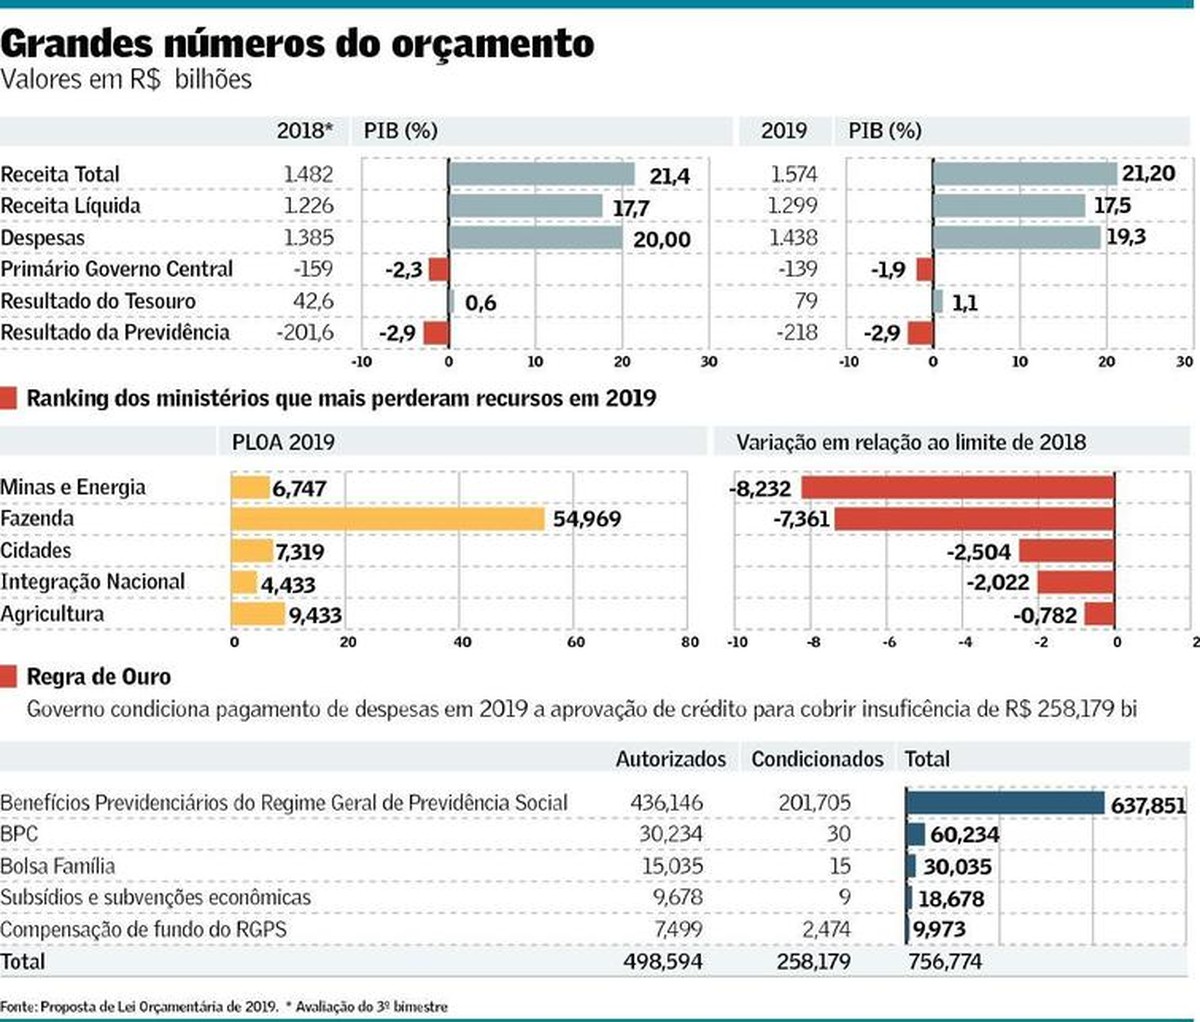 Religious down Revenue Governo condiciona meio Bolsa Família à aprovação de crédito pelo Congresso  | Brasil | Valor Econômico